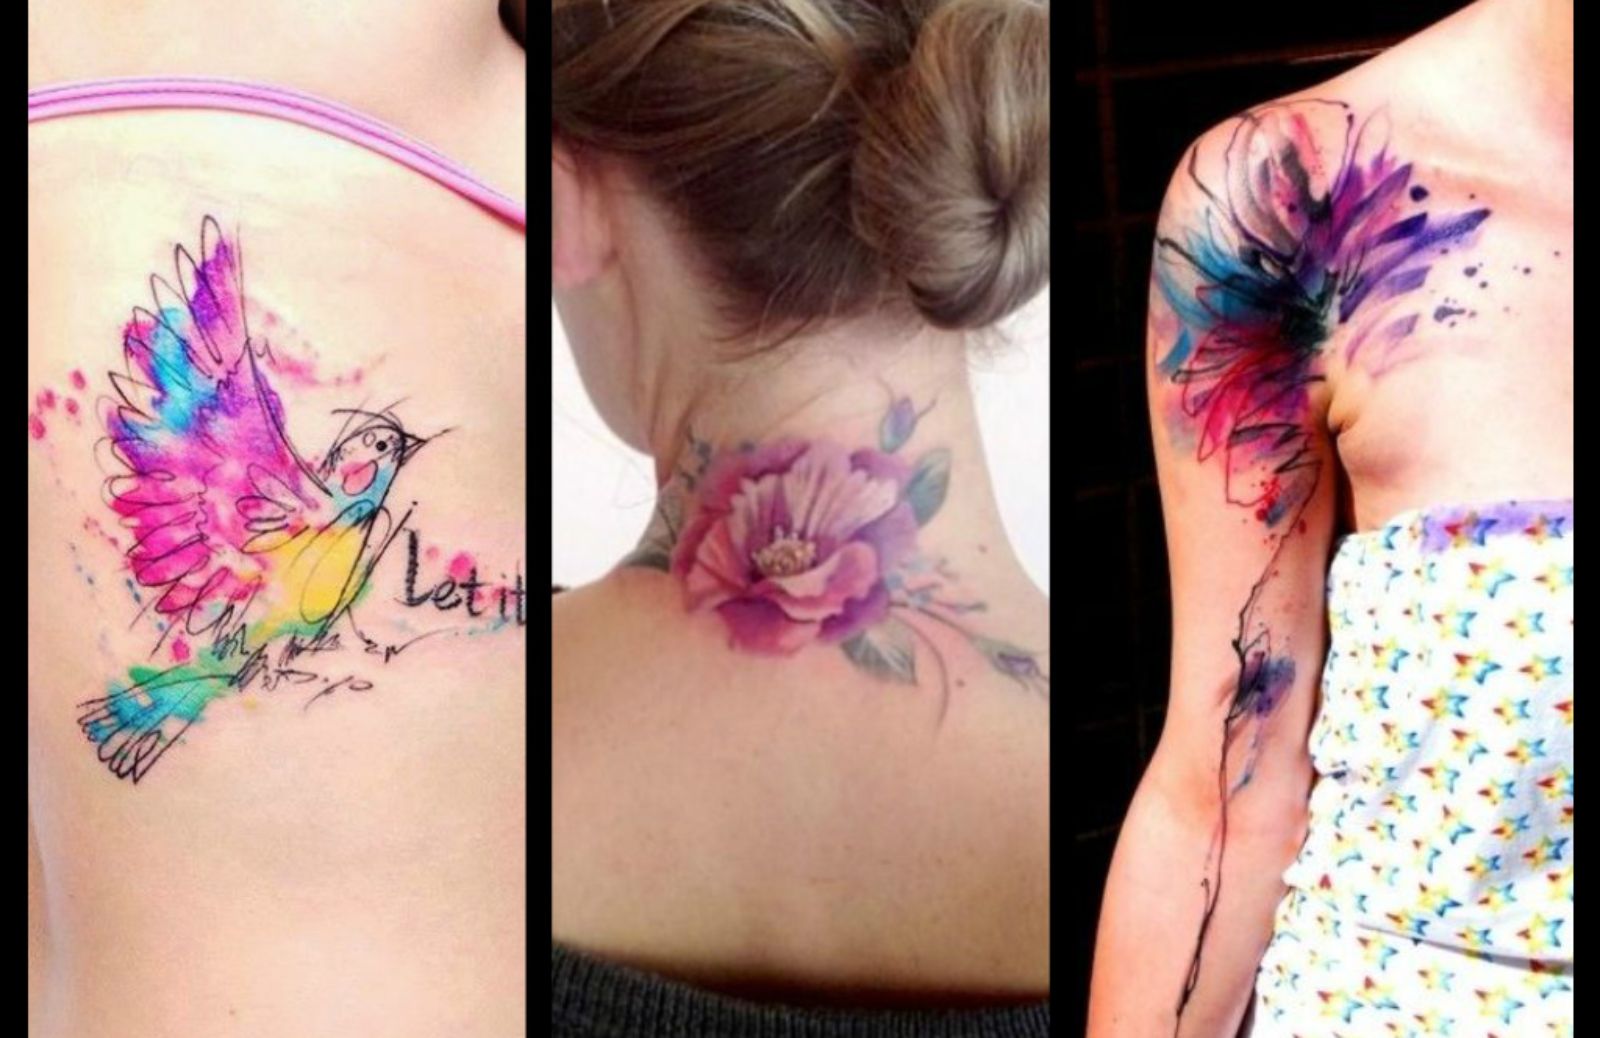 Tatuaggi watercolor: quando il tatuaggio si ispira agli acquerelli